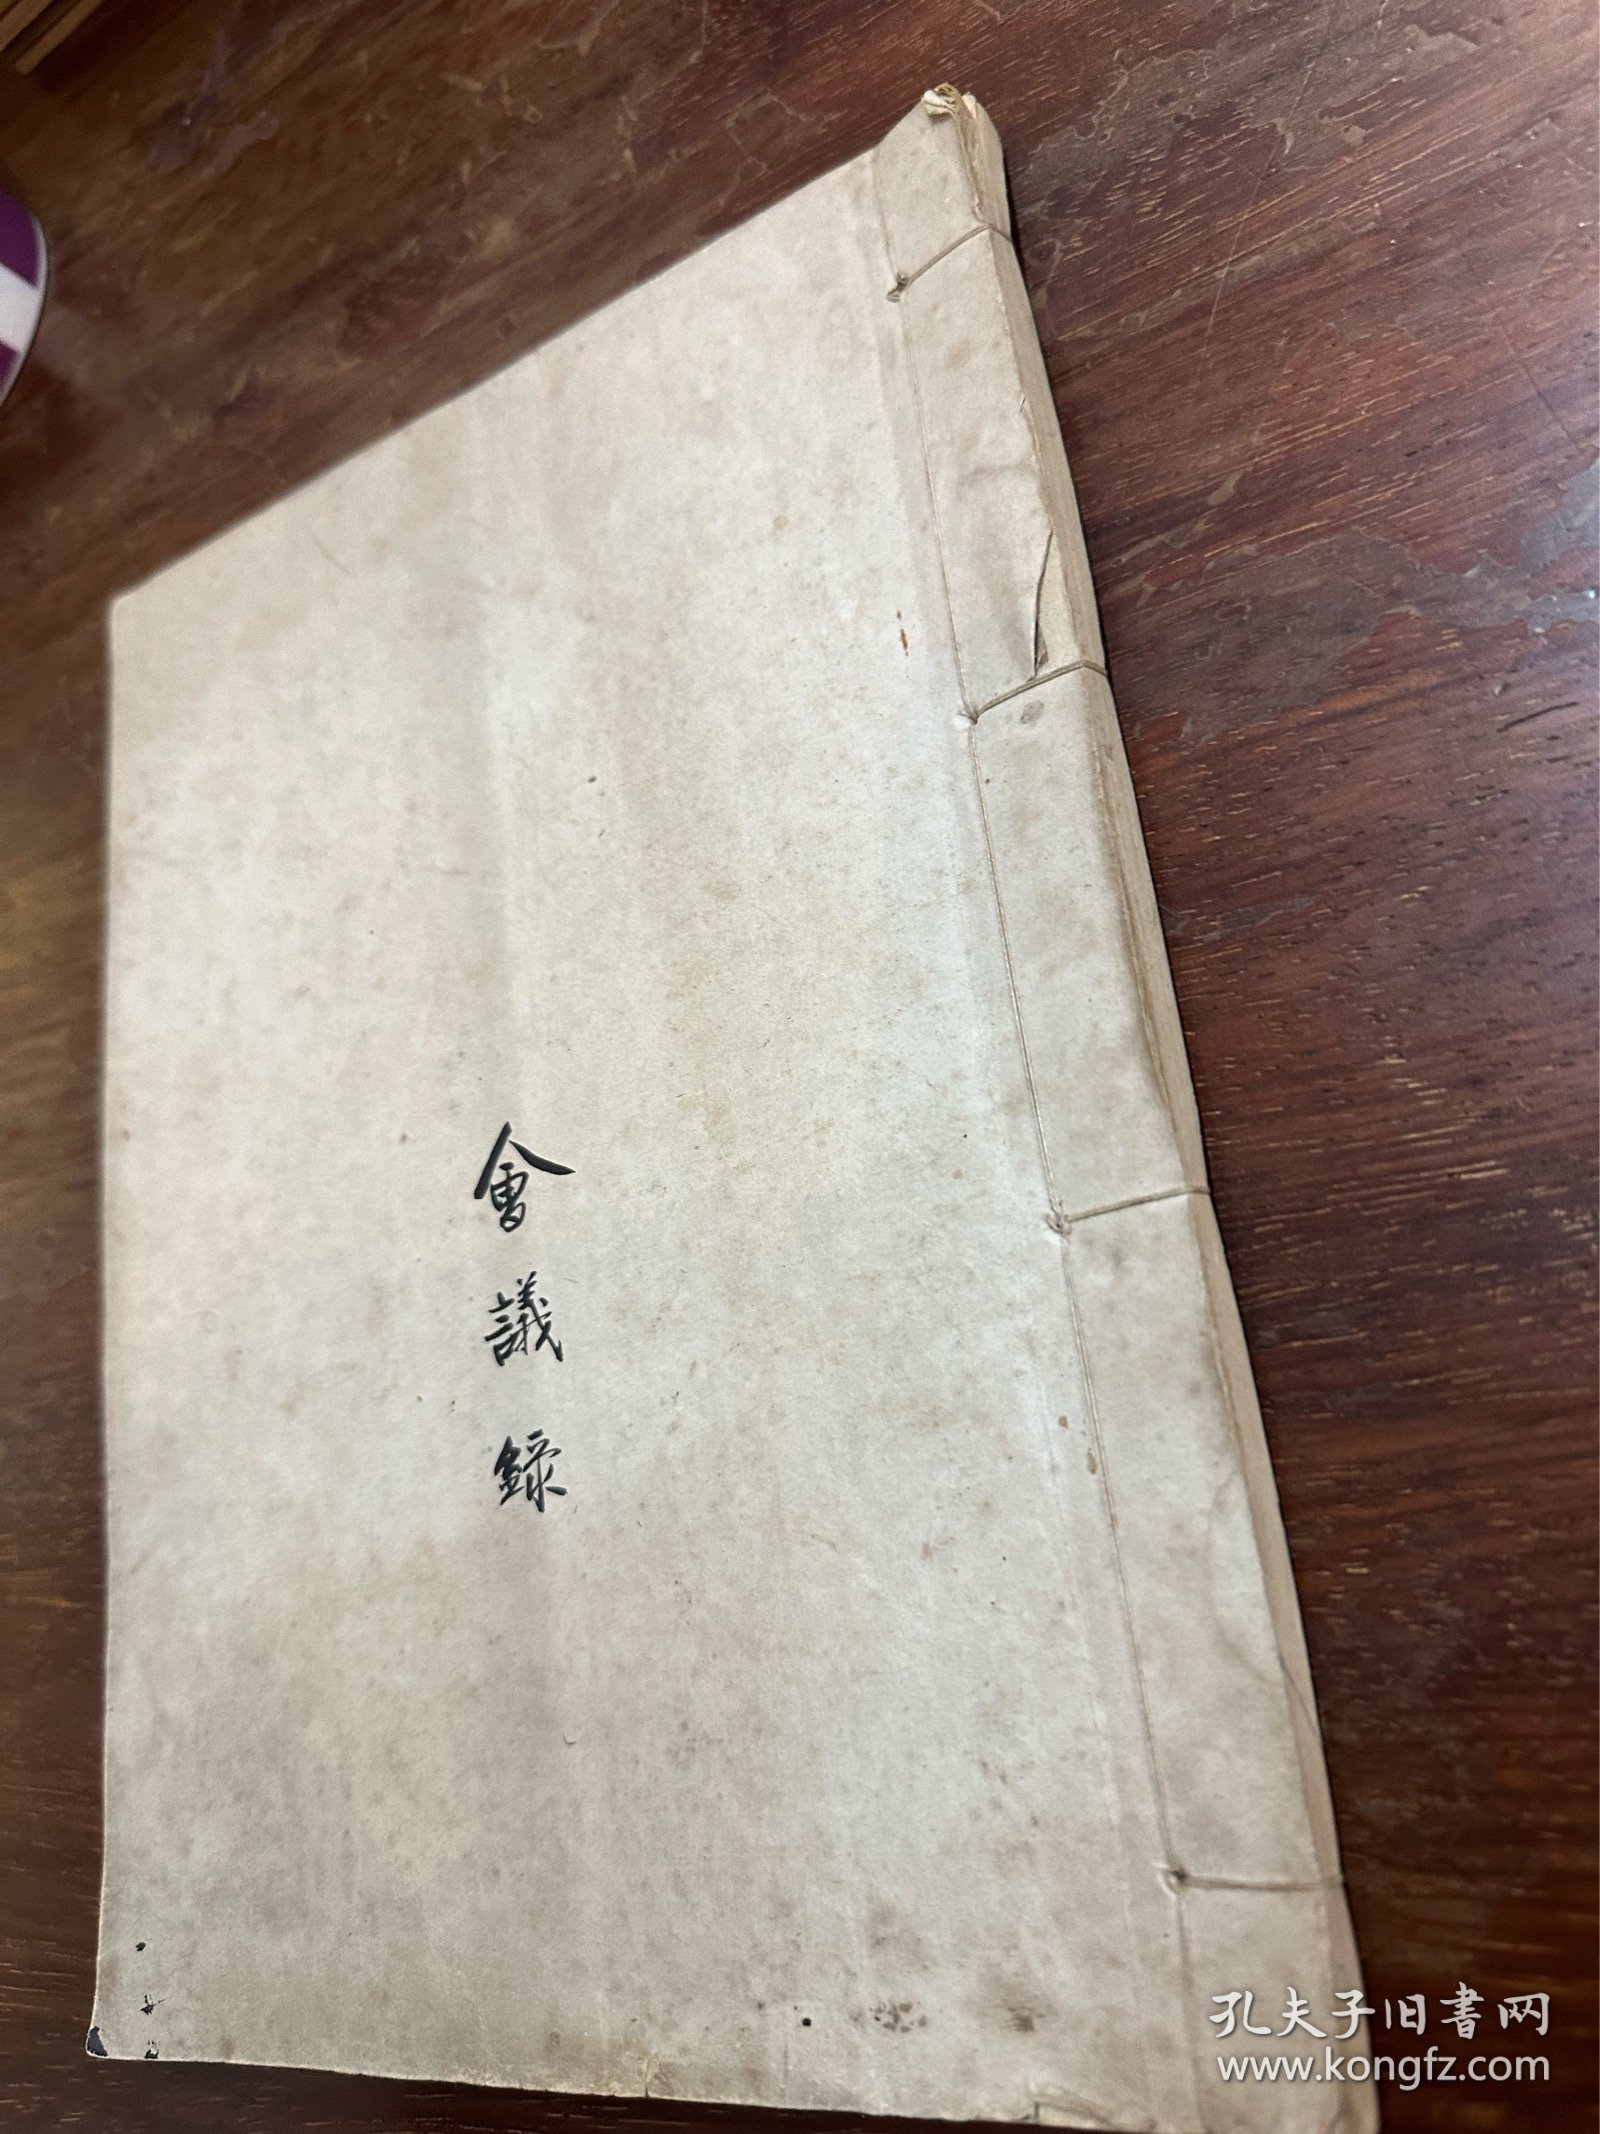 上海联益商行毛笔会议录一册，含合众并入联益增资、劳资协商、国际贸易业“四反”运动等记录，写了43个筒子页，28X21CM，1951-1952年。